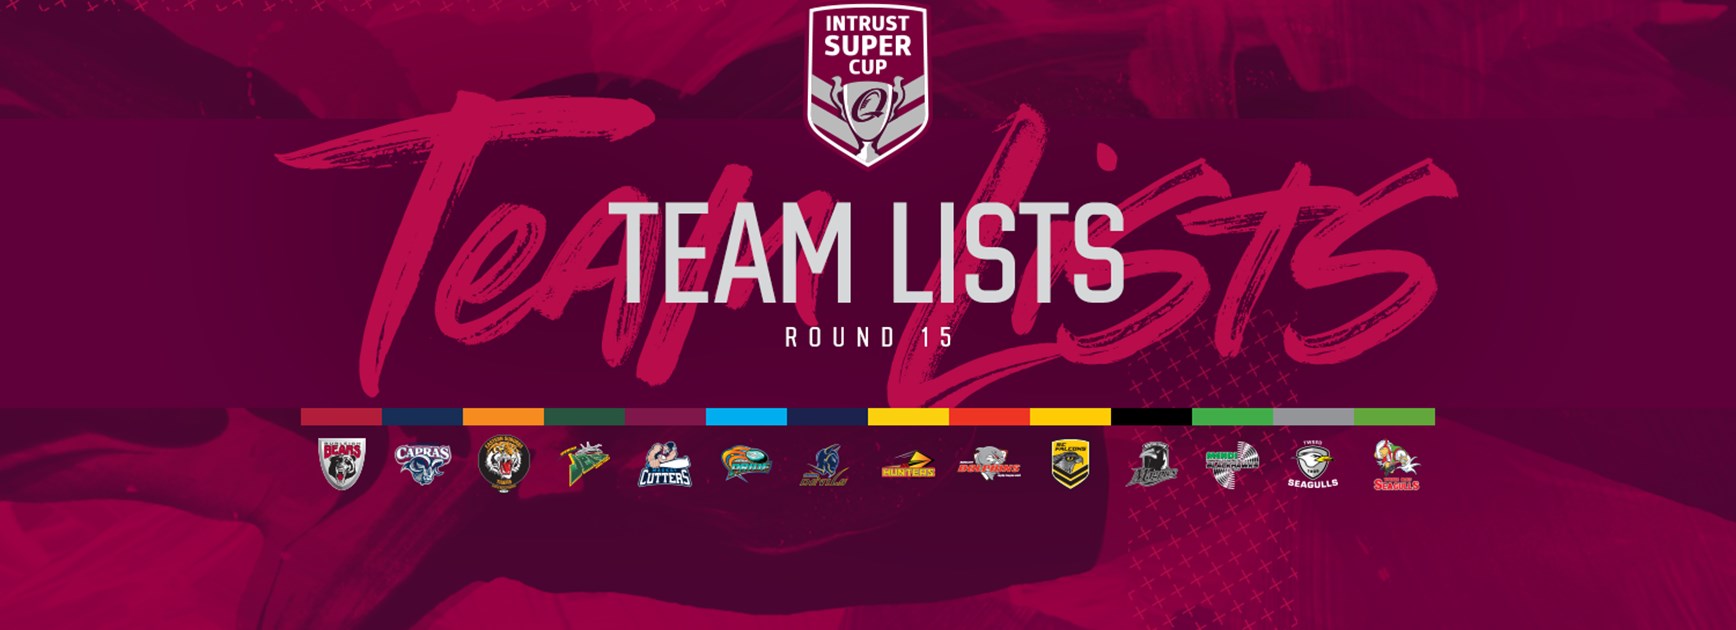 Intrust Super Cup Round 15 teams